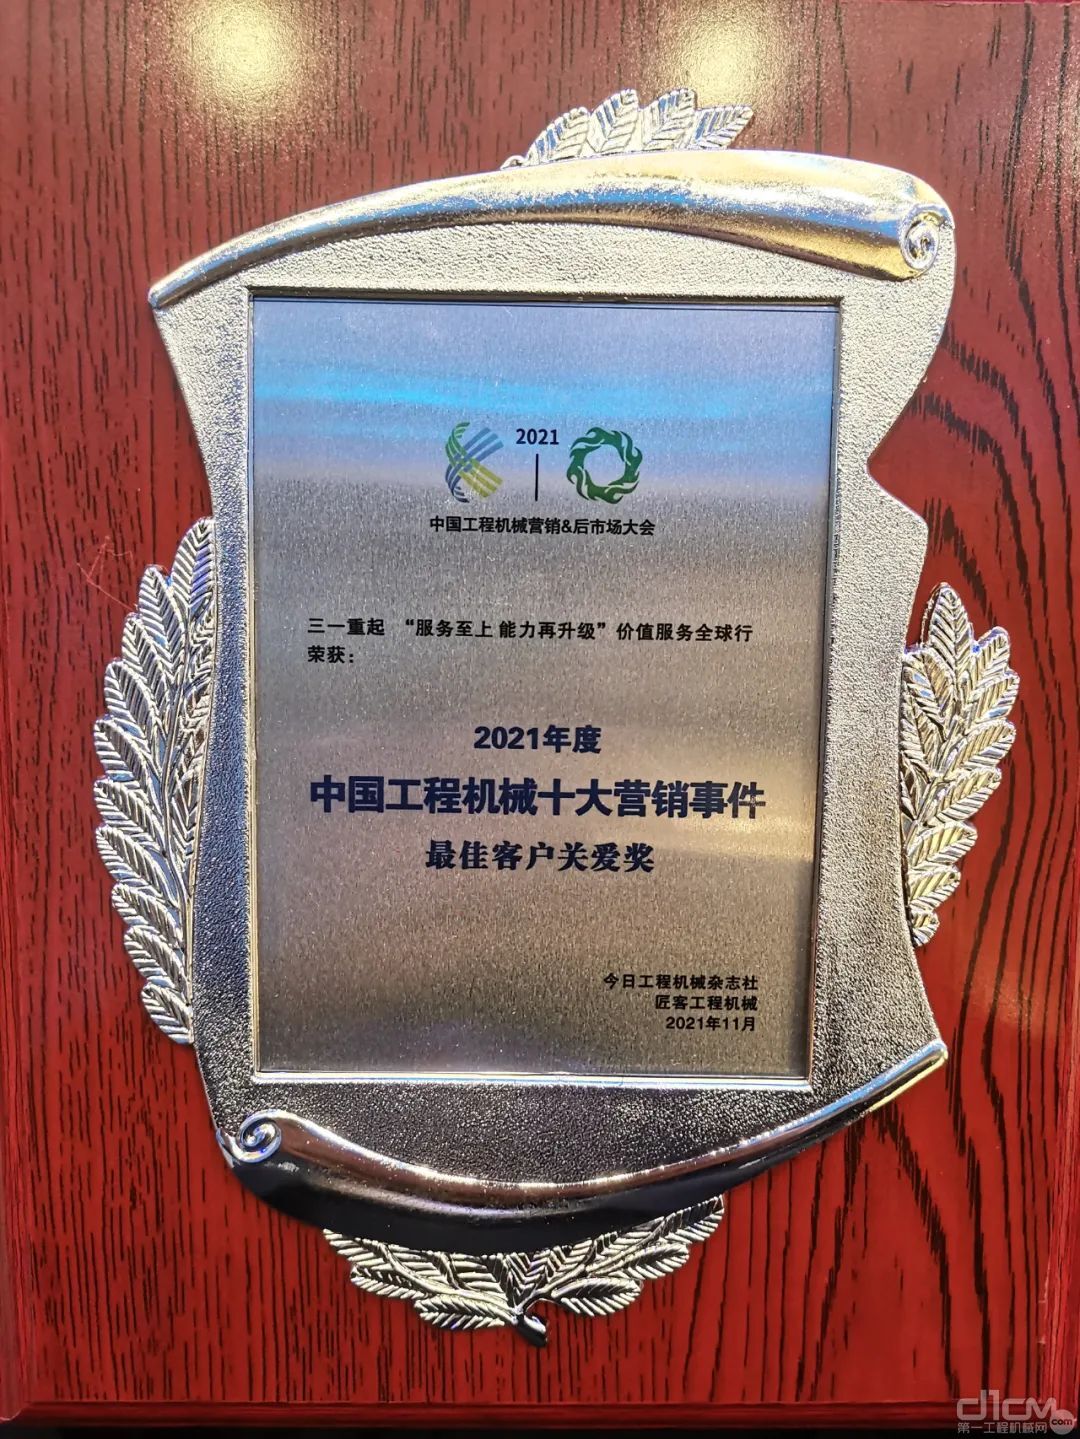 三一起重机获评“2021 年度中国工程机械十大营销事件”最佳客户关爱奖